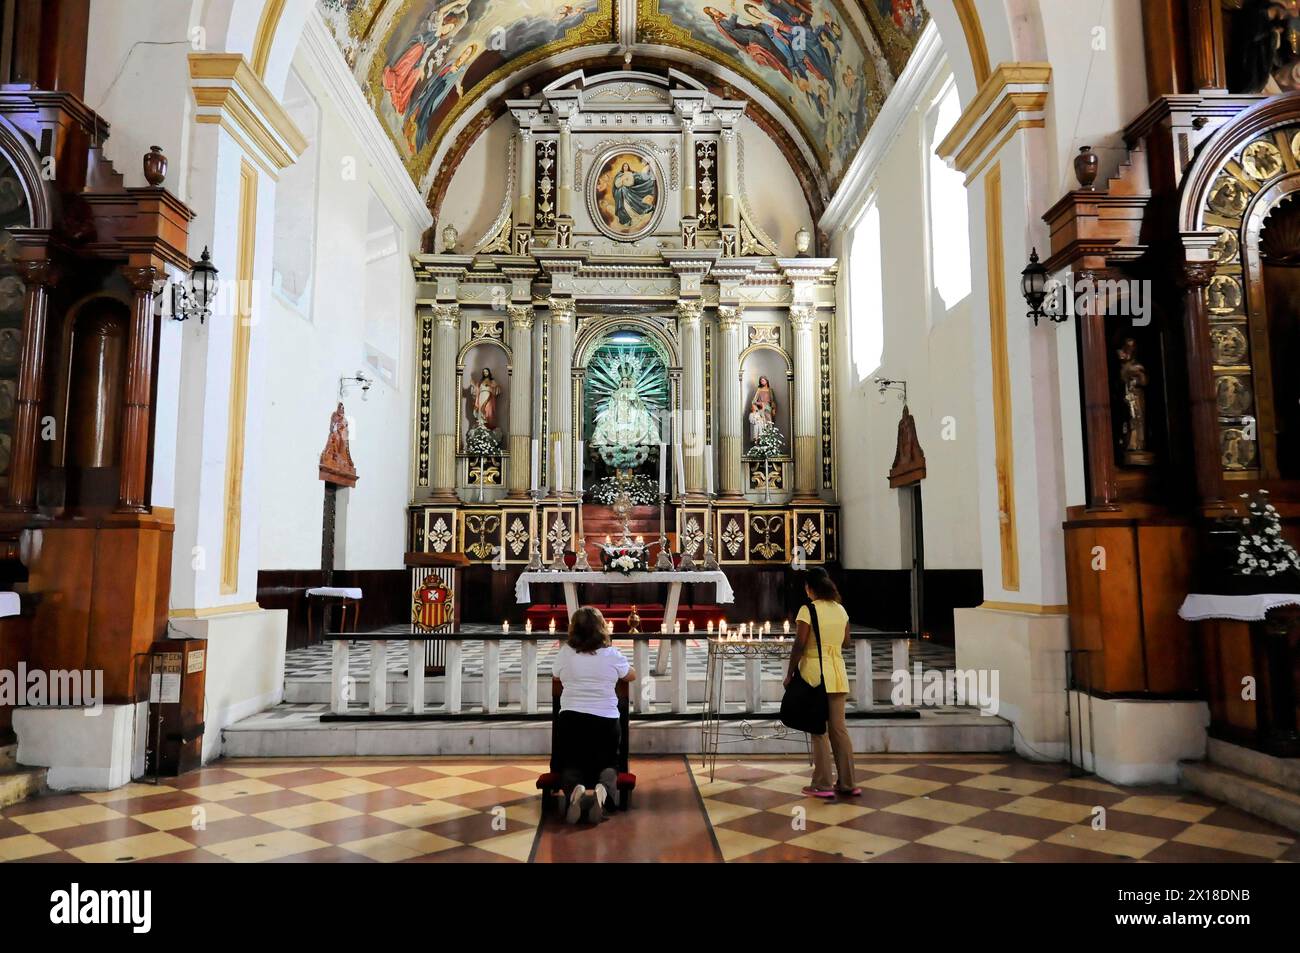 La Merced Church, erbaut um 1762, Leon, Nicaragua, Menschen beten vor einem reich geschmückten Altar in einer Kirche, Zentralamerika, Mittelamerika Stockfoto